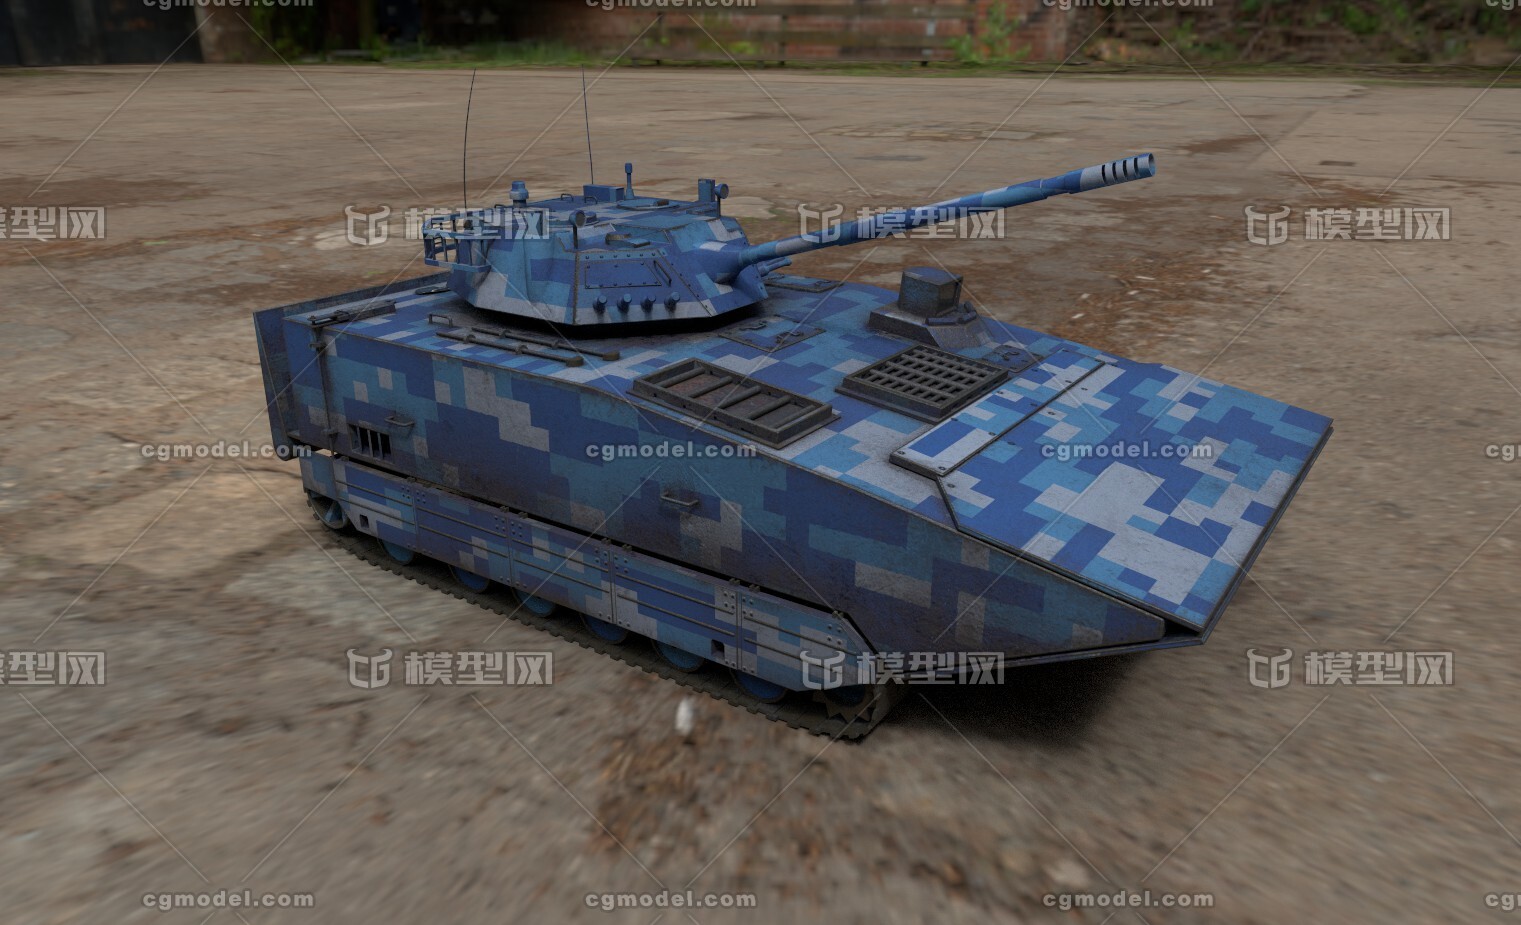 两栖坦克 两栖突击车 ztd-05 坦克 特种坦克